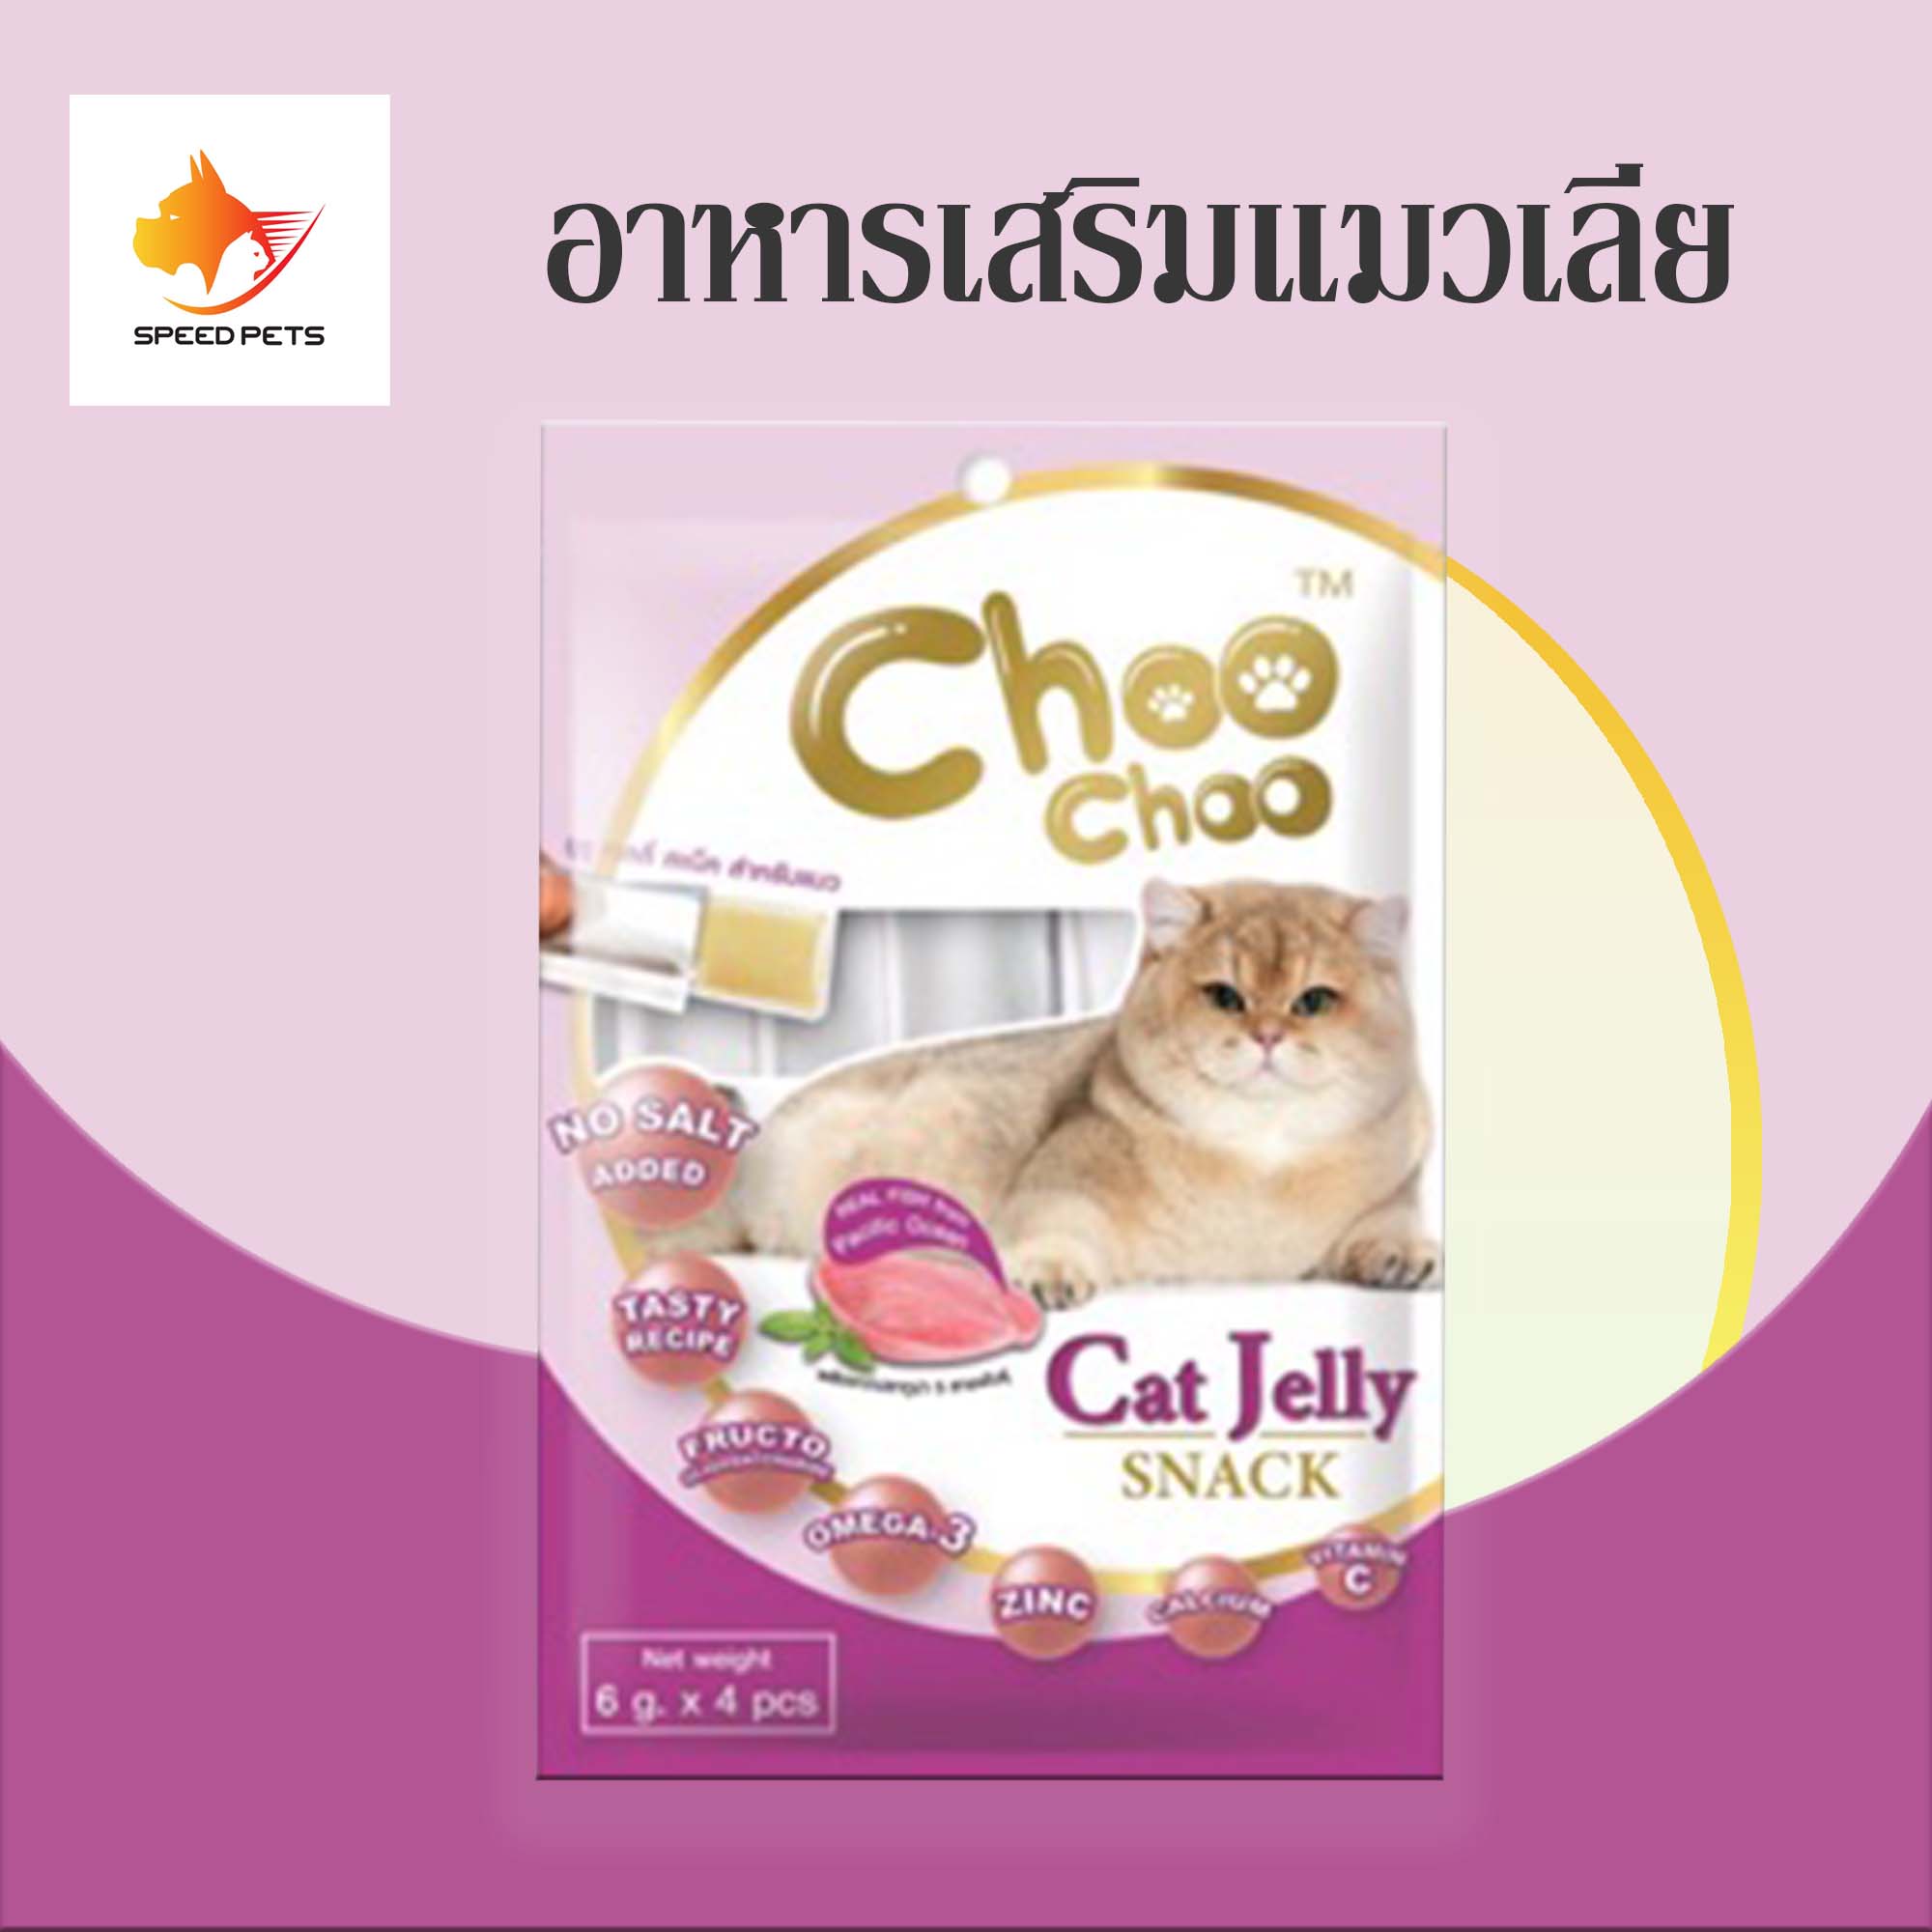 Choo Choo Cat Jelly Snack Tuna ขนมแมว ขนมแมวเลีย ชูชู เยลลี่ เนื้อปลาทูน่า 6 g บรรจุ 4 ชิ้น